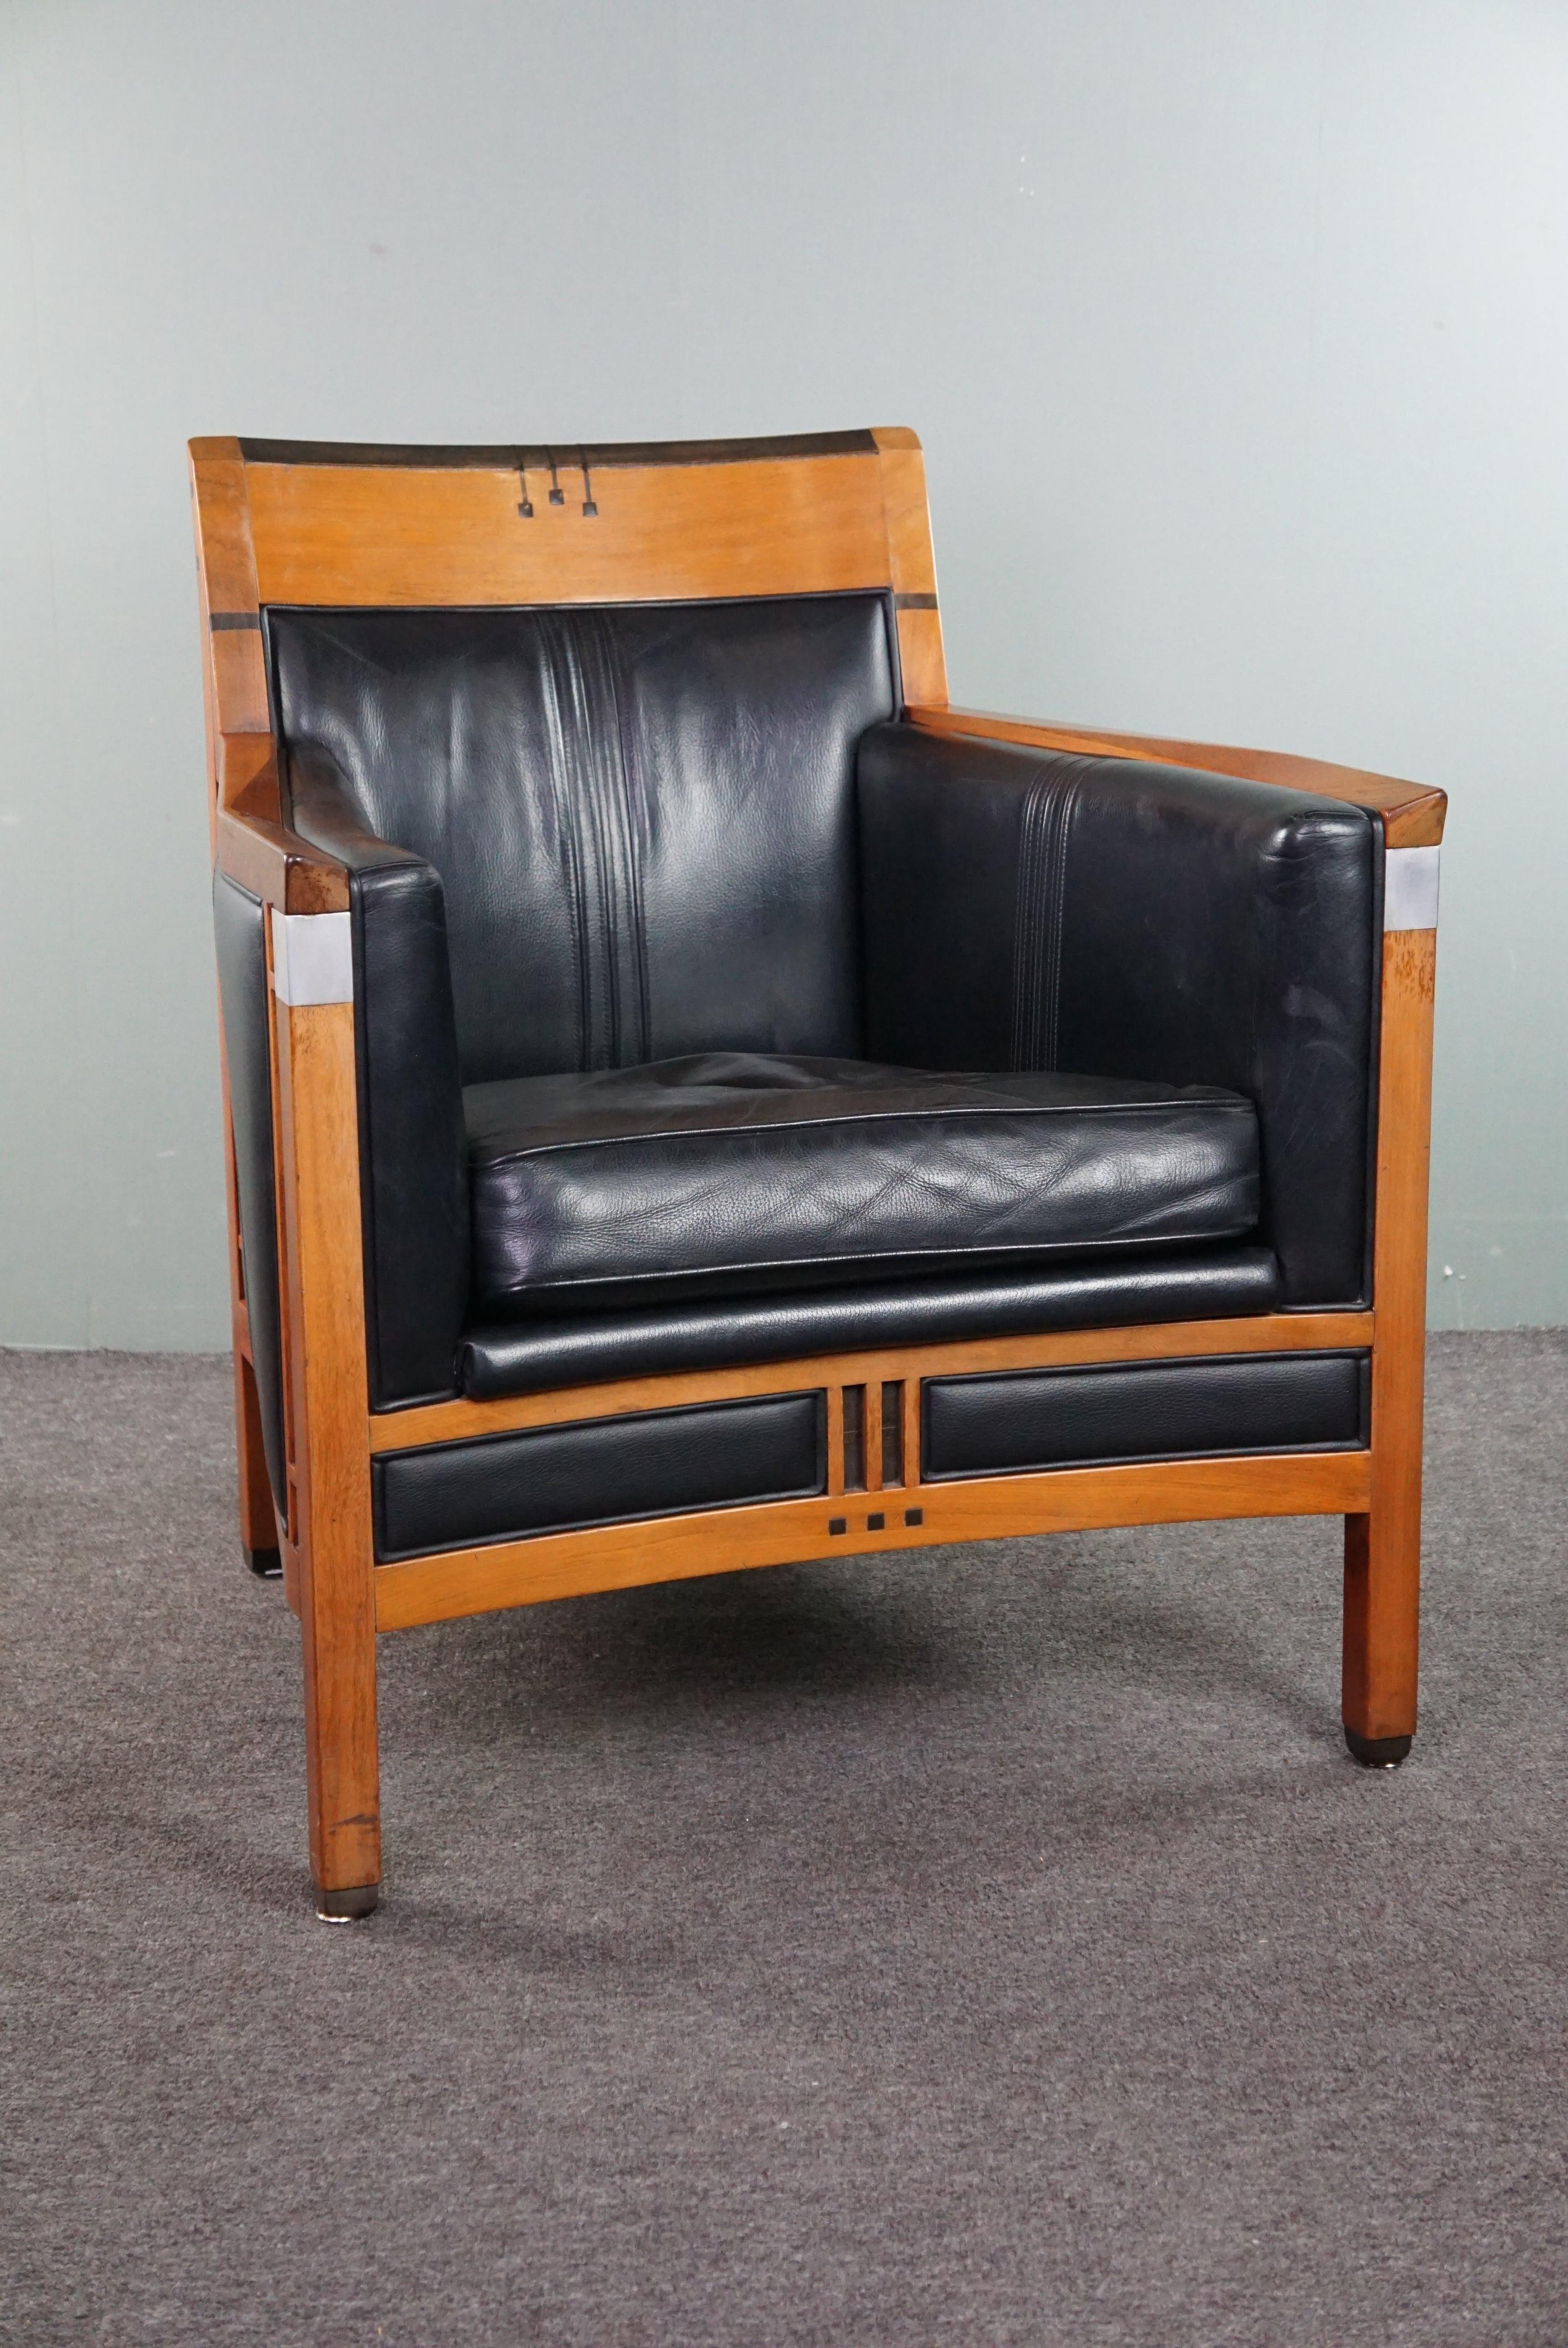 Offert : ce fantastique fauteuil Schuitema Decoforma de style Art Déco avec cuir noir et de magnifiques accents.

Un meuble conçu et fabriqué par Schuitema est synonyme de design époustouflant et de très haute qualité, à l'instar de ce magnifique